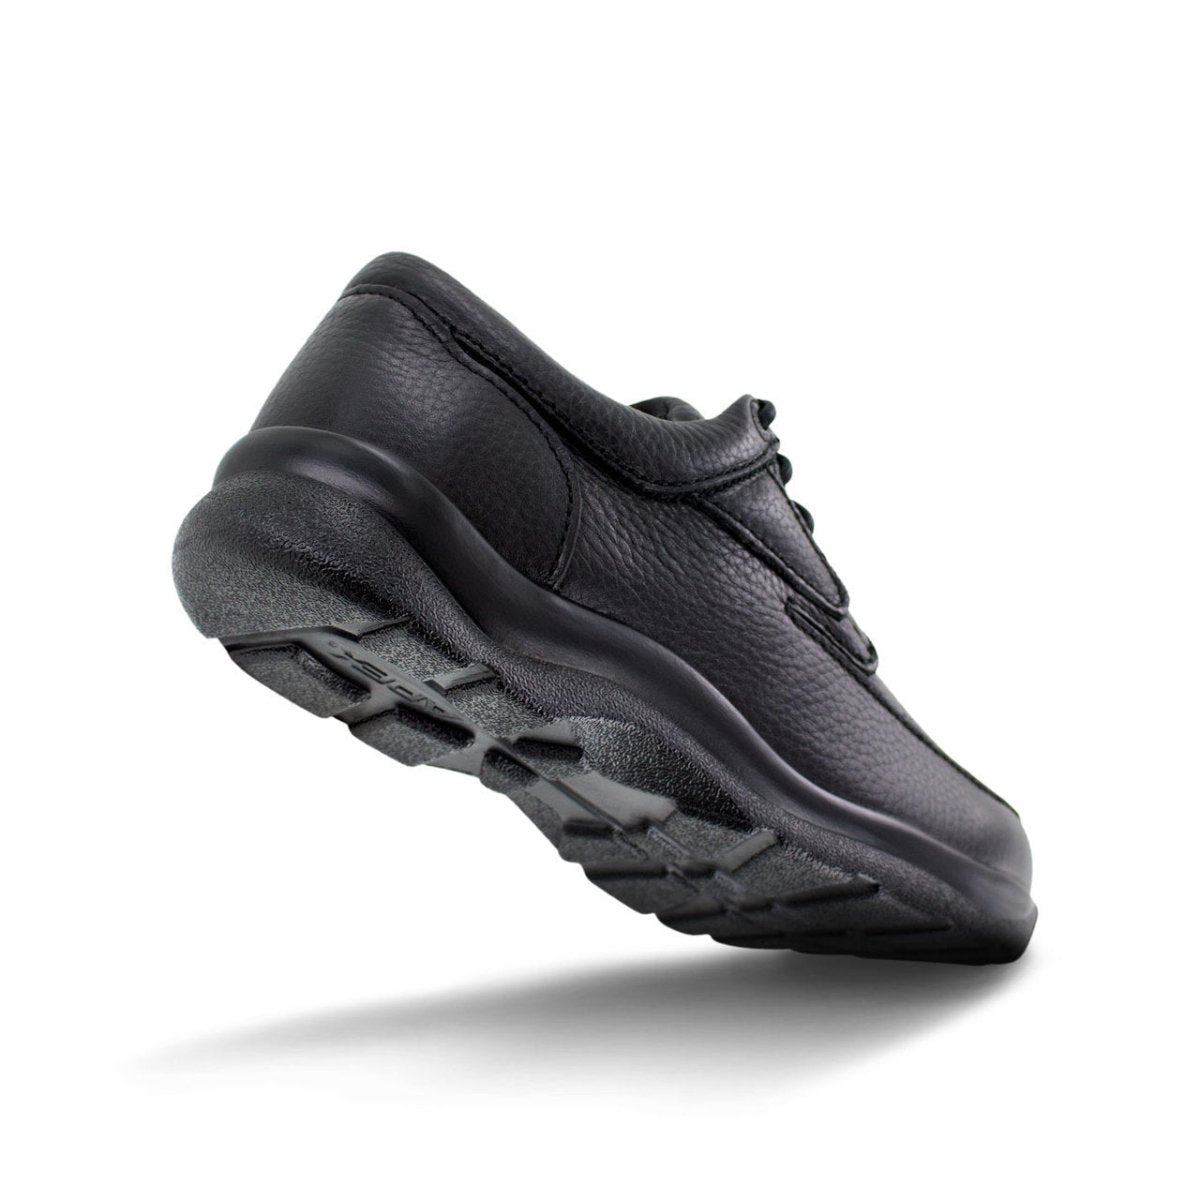 APEX Y900M ARIYA MOC TOE DRESS MEN'S SHOE IN BLACK - TLW Shoes